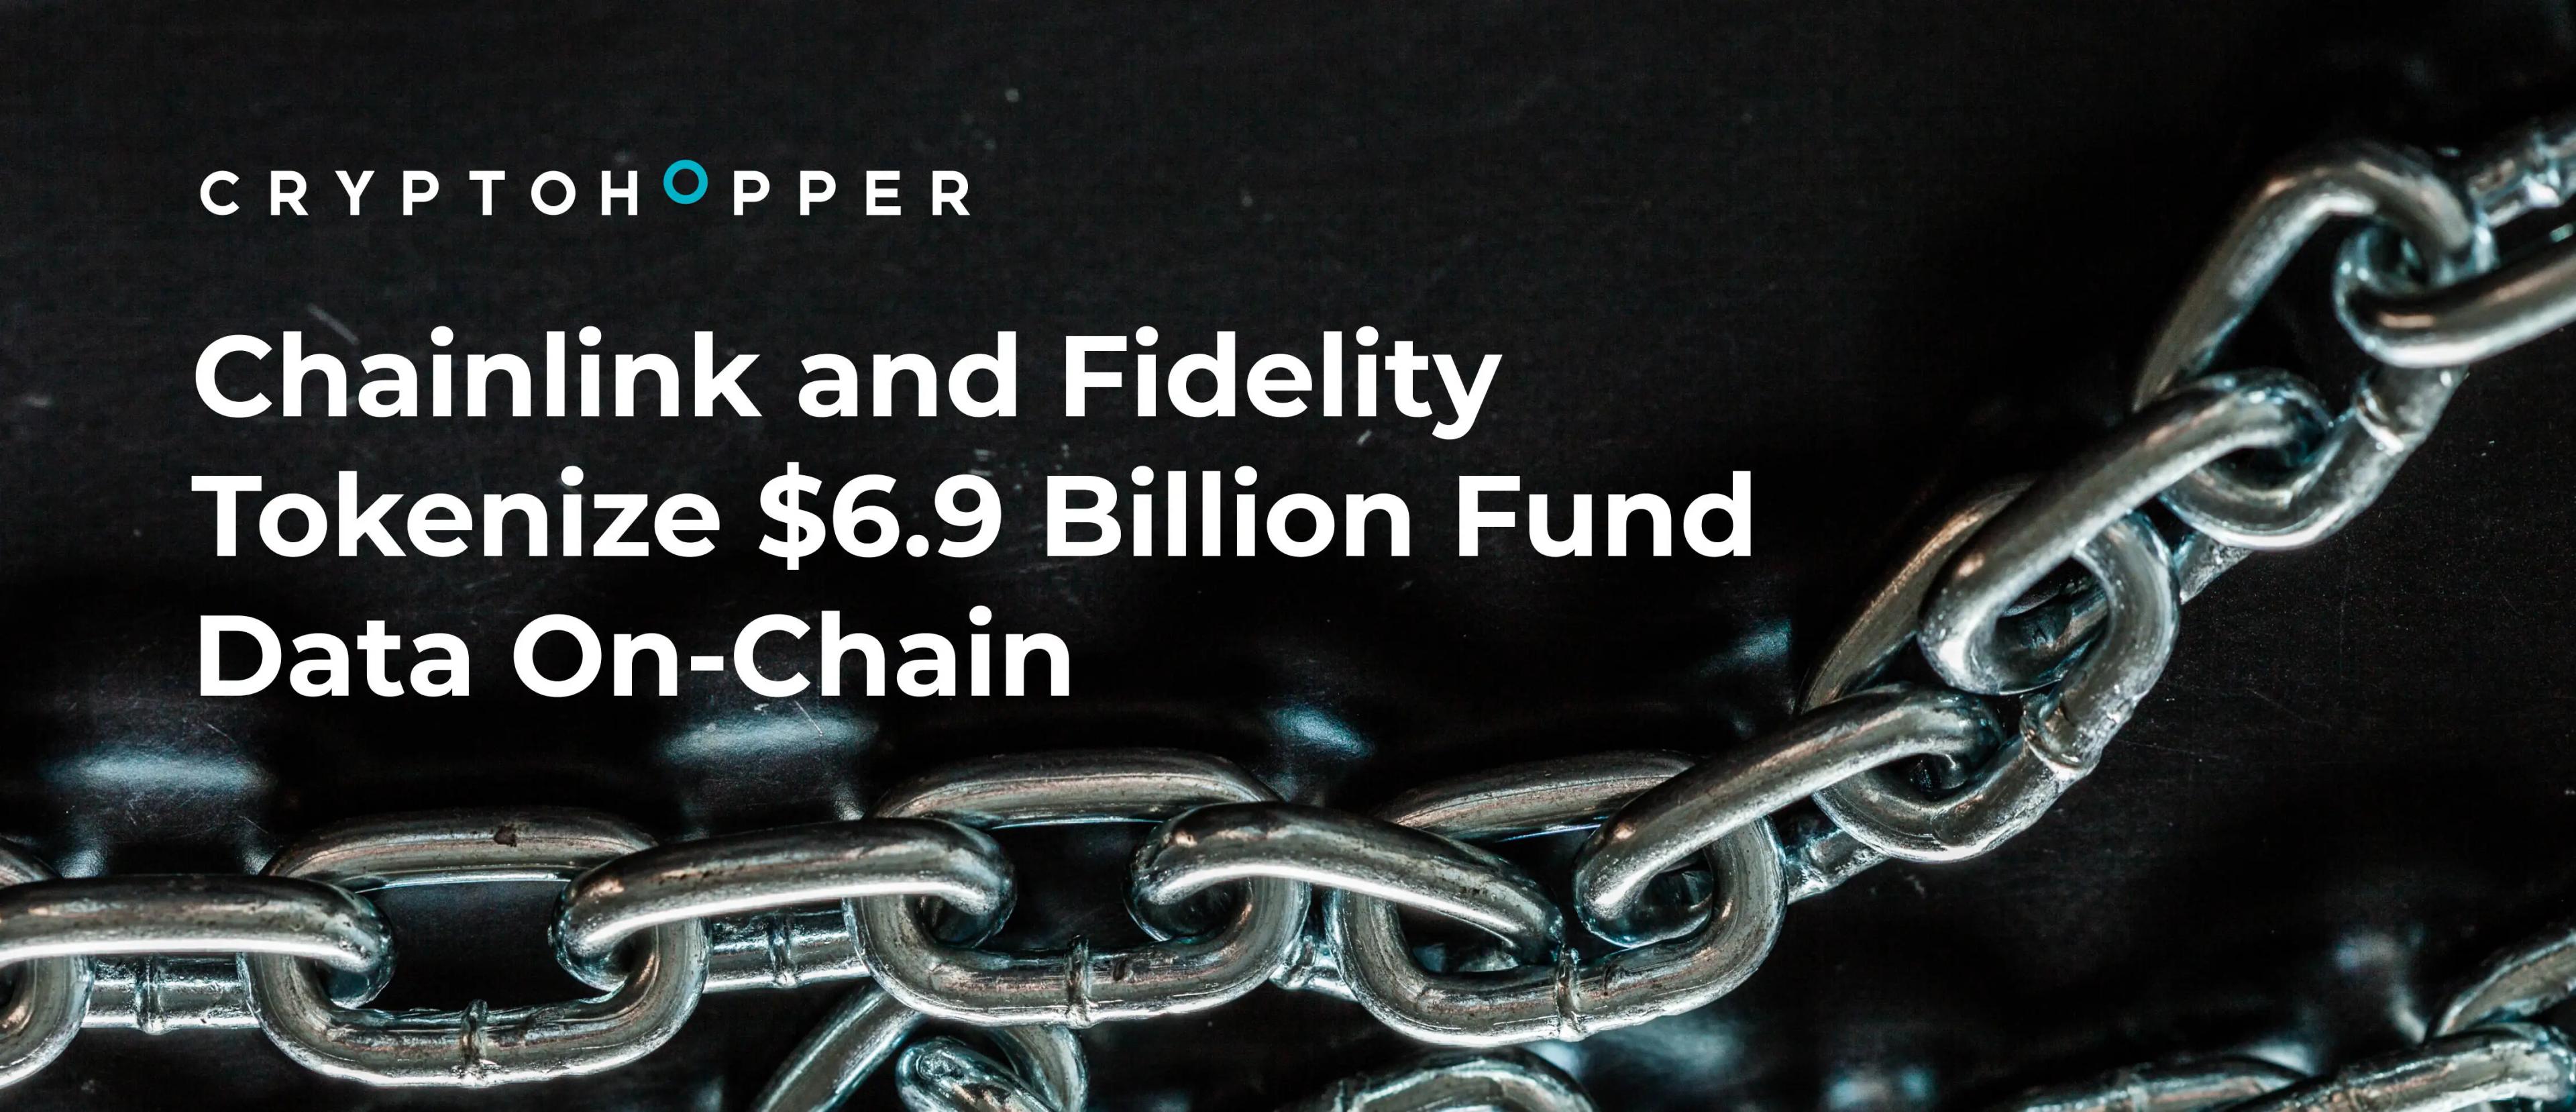 Tokenization Trend: Chainlink and Fidelity Tokenize $6.9 Billion Fund Data On-Chain